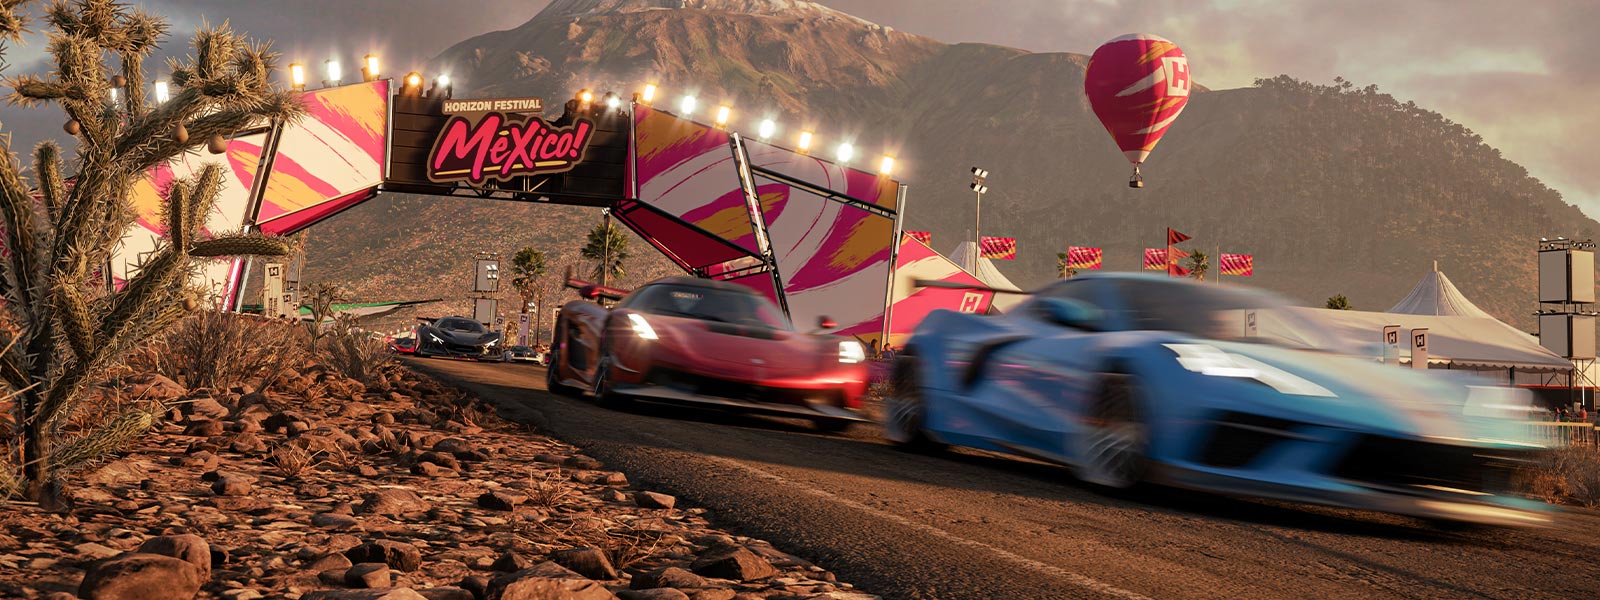 3 輛車在墨西哥 Forza Horizon 5 賽道競速